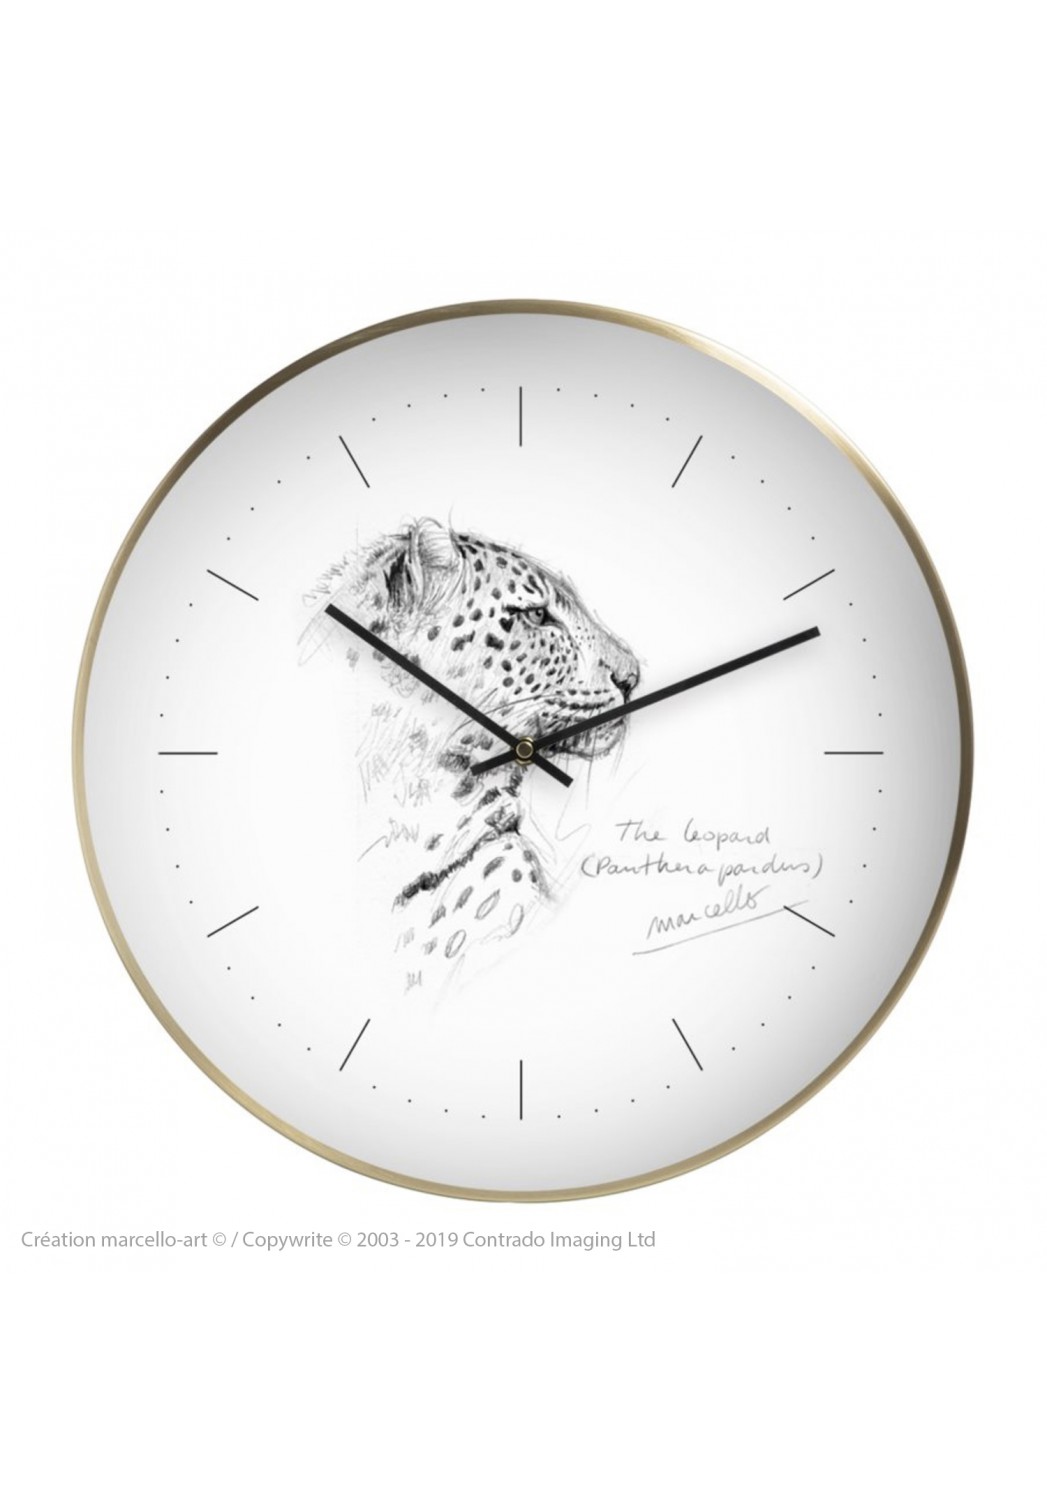 Marcello-art: Decoration accessoiries Wall clock 180 Leopard profile